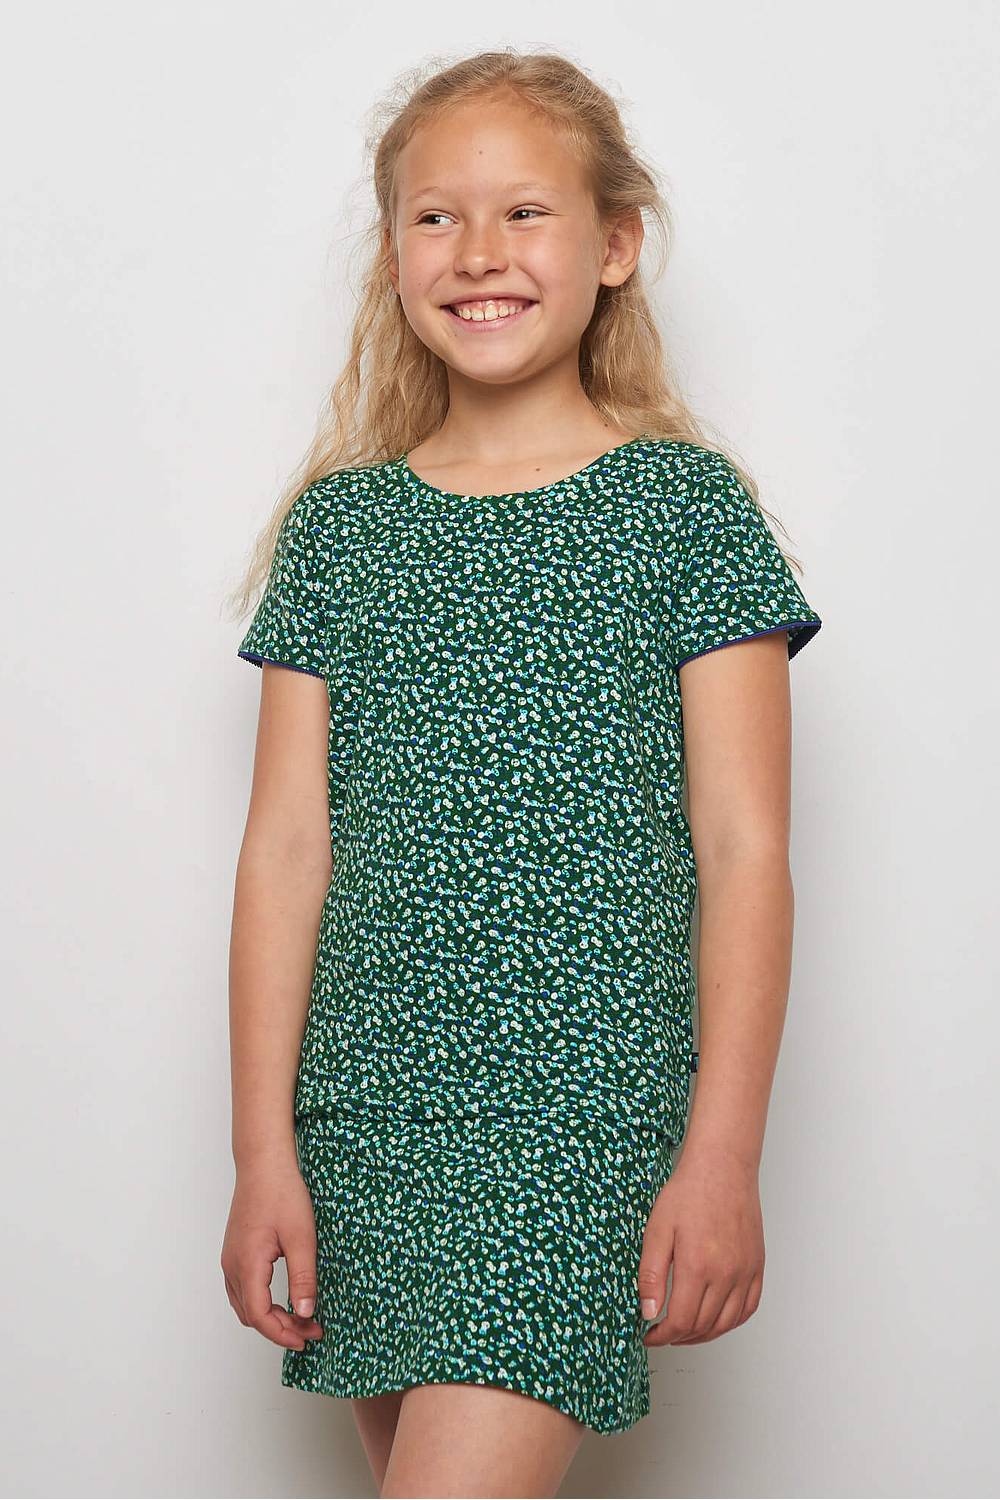 Kids Jersey-Shirt Lilly Green Peas (Gots) 116/122